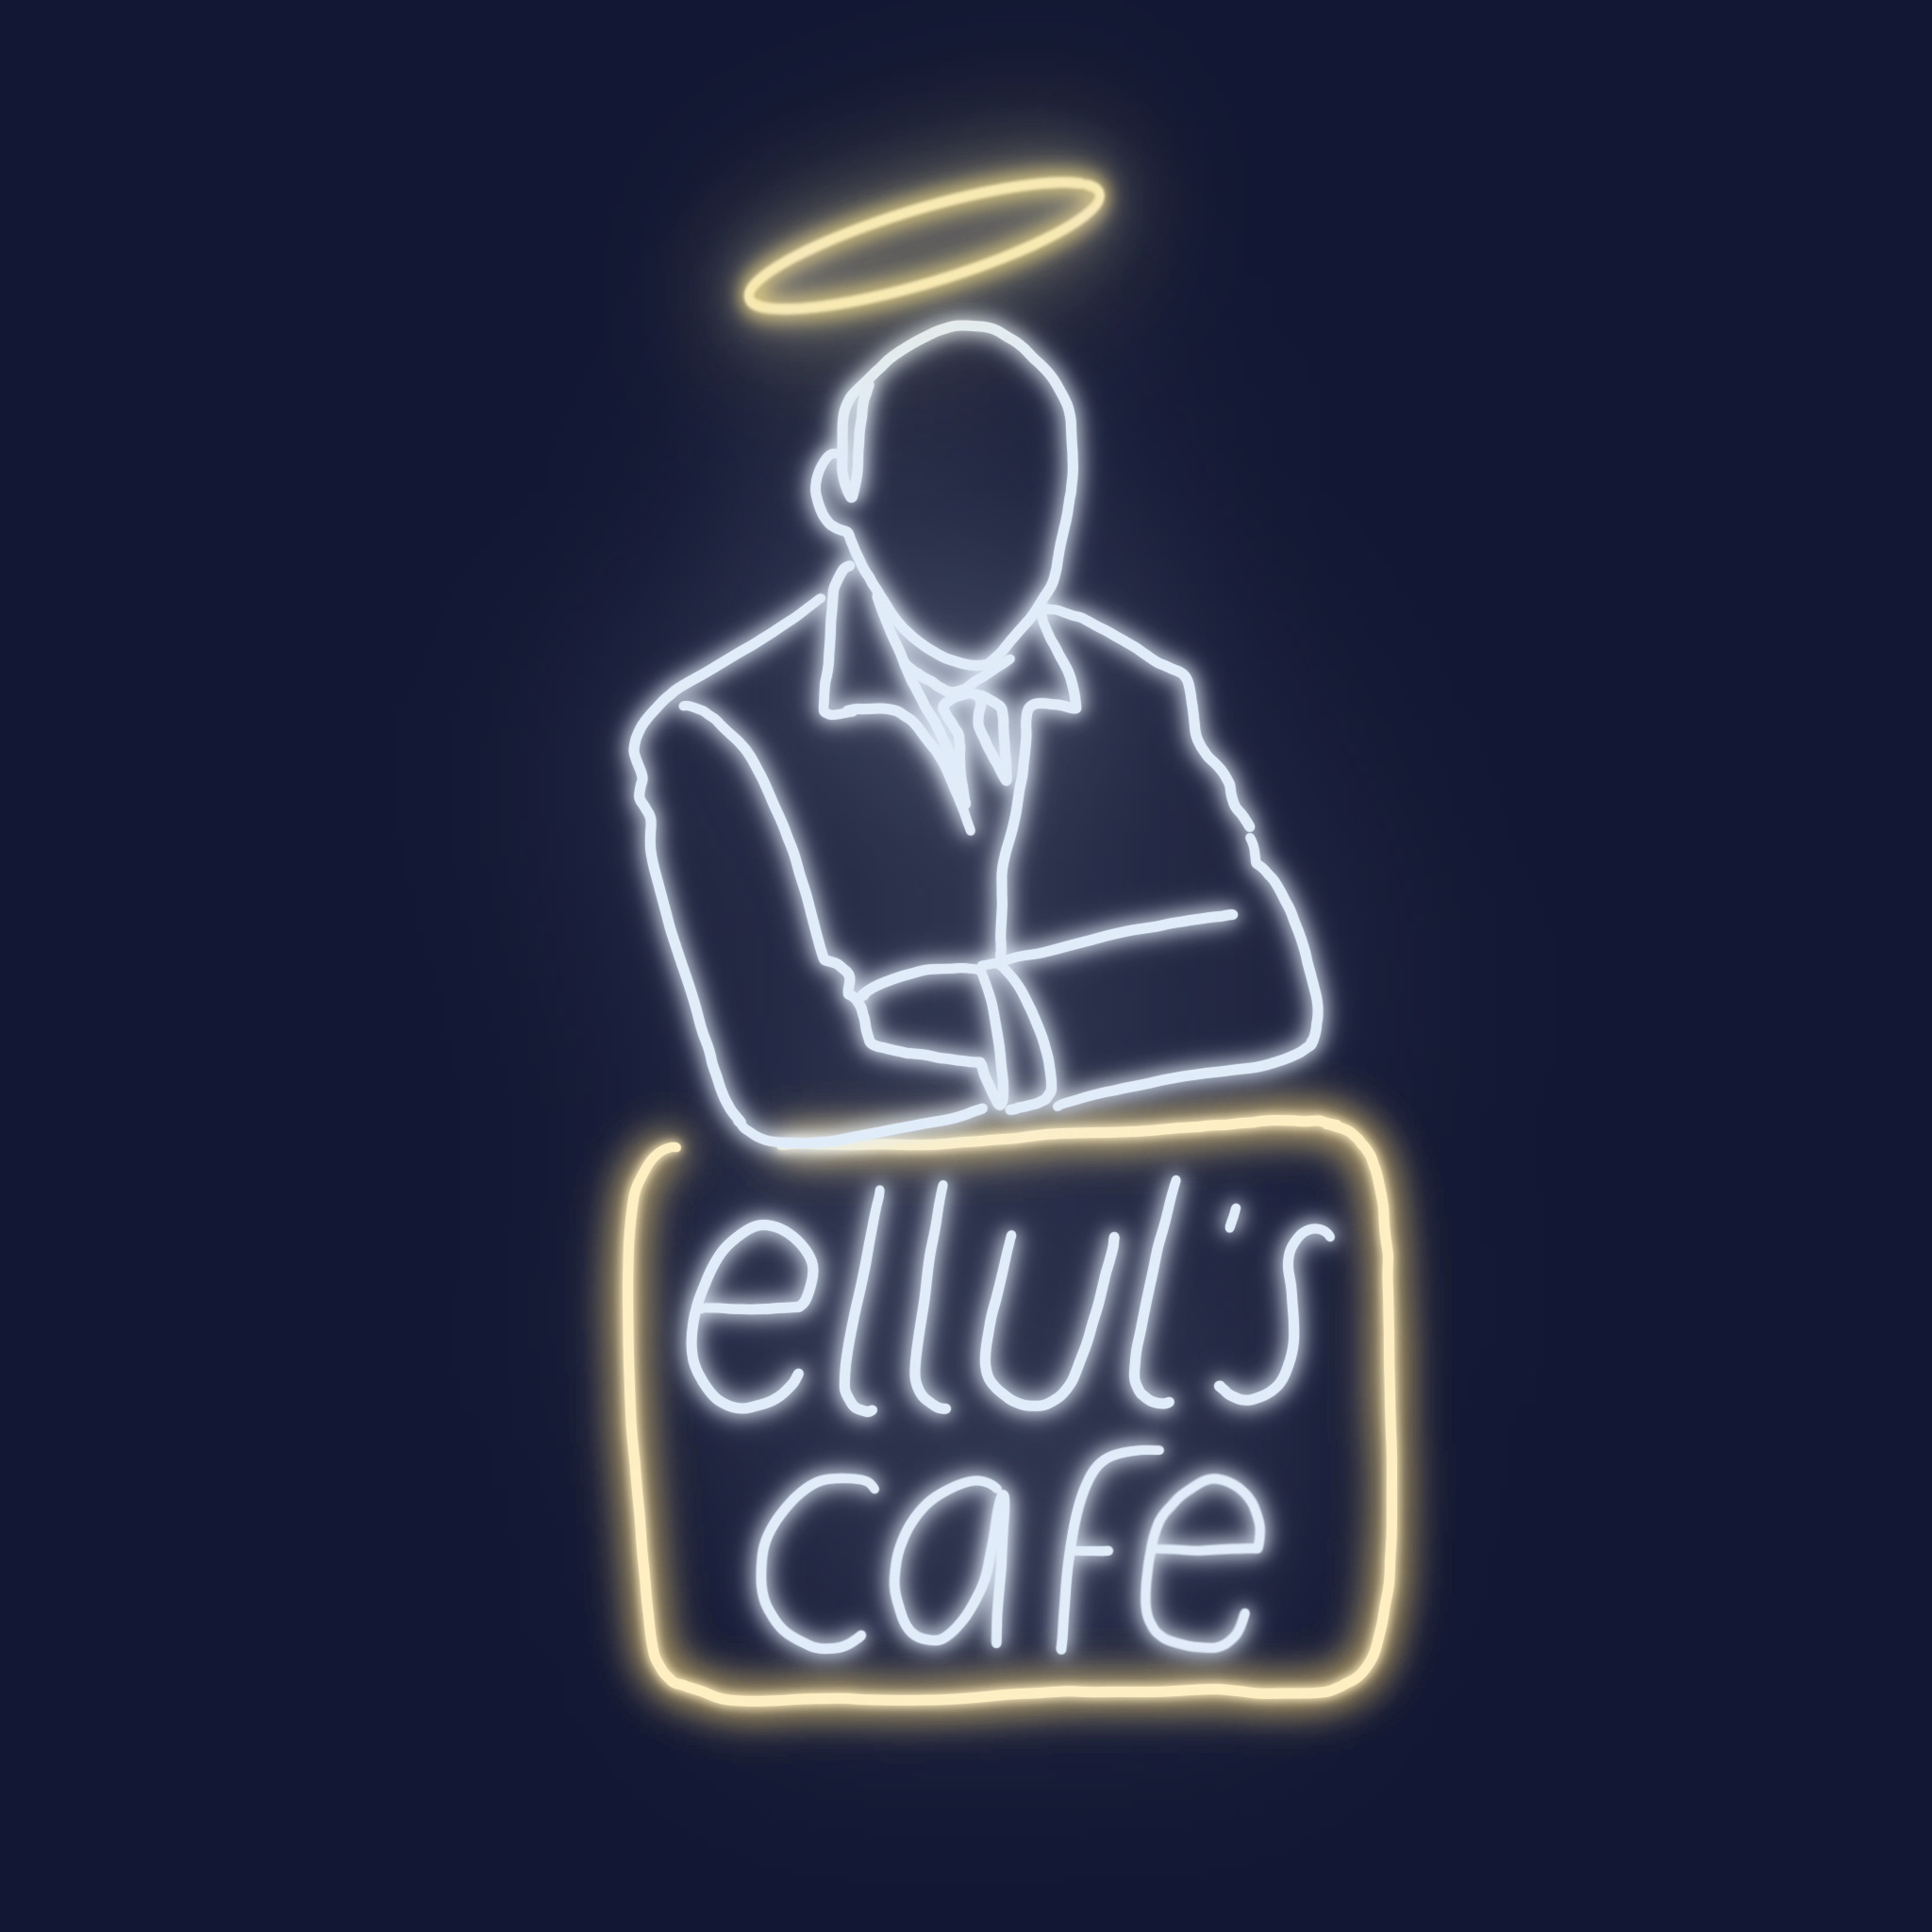 Ellul's Cafe